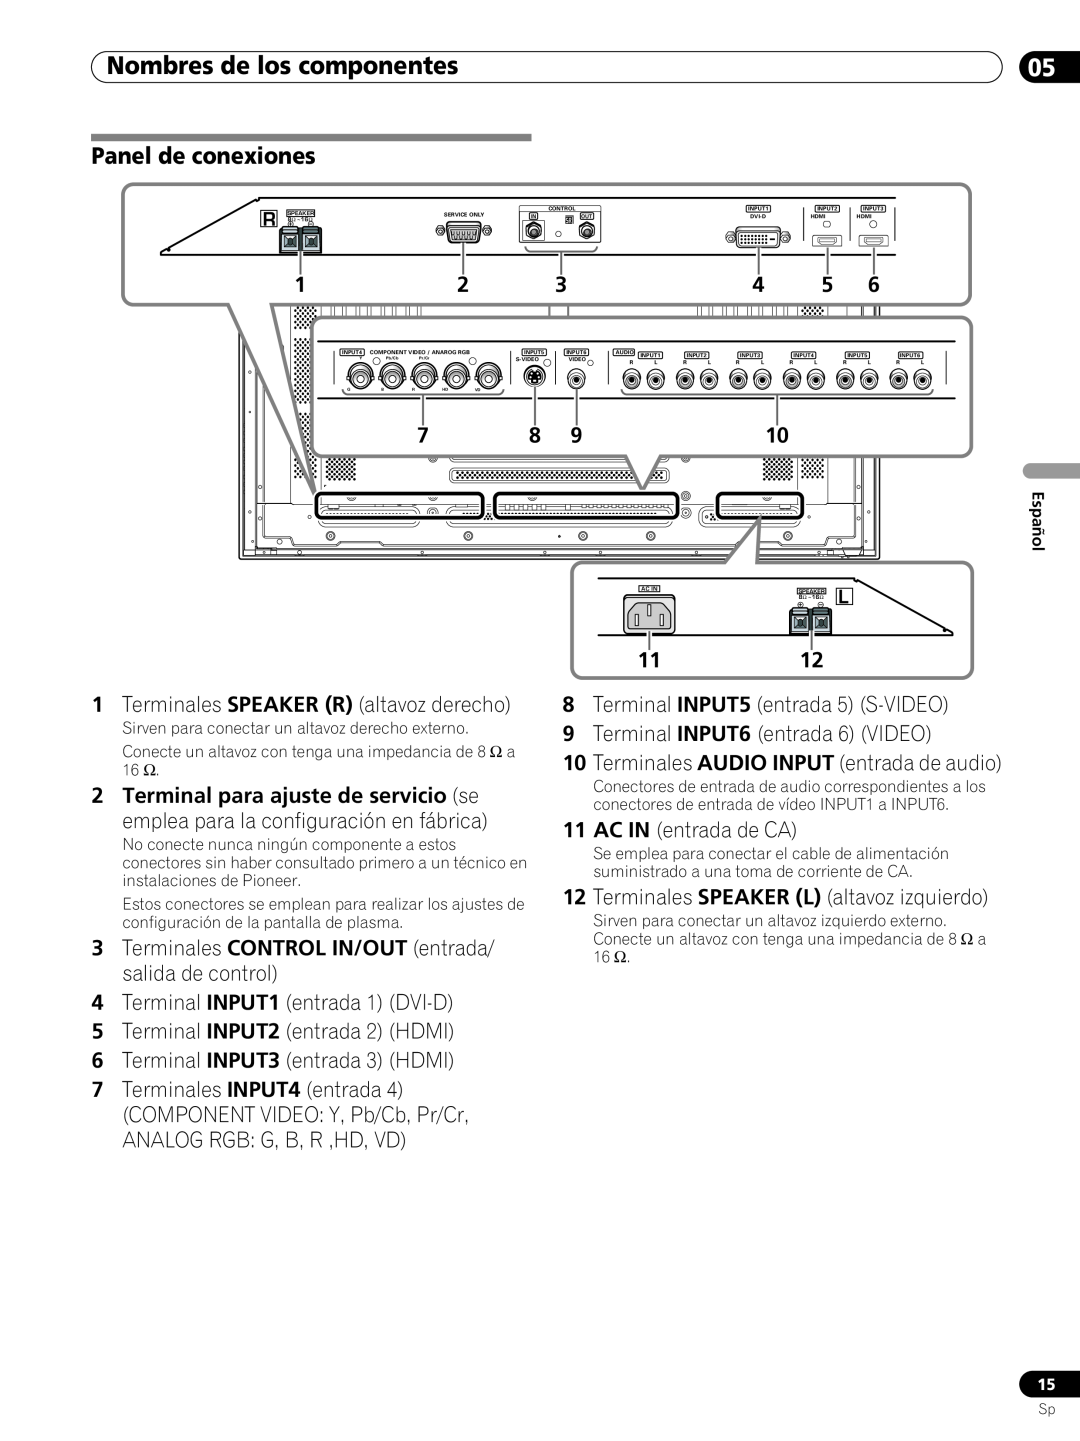 Pioneer PRO-FHD1 Panel de conexiones, Nombres de los componentes, Terminales SPEAKER R altavoz derecho, 1112 